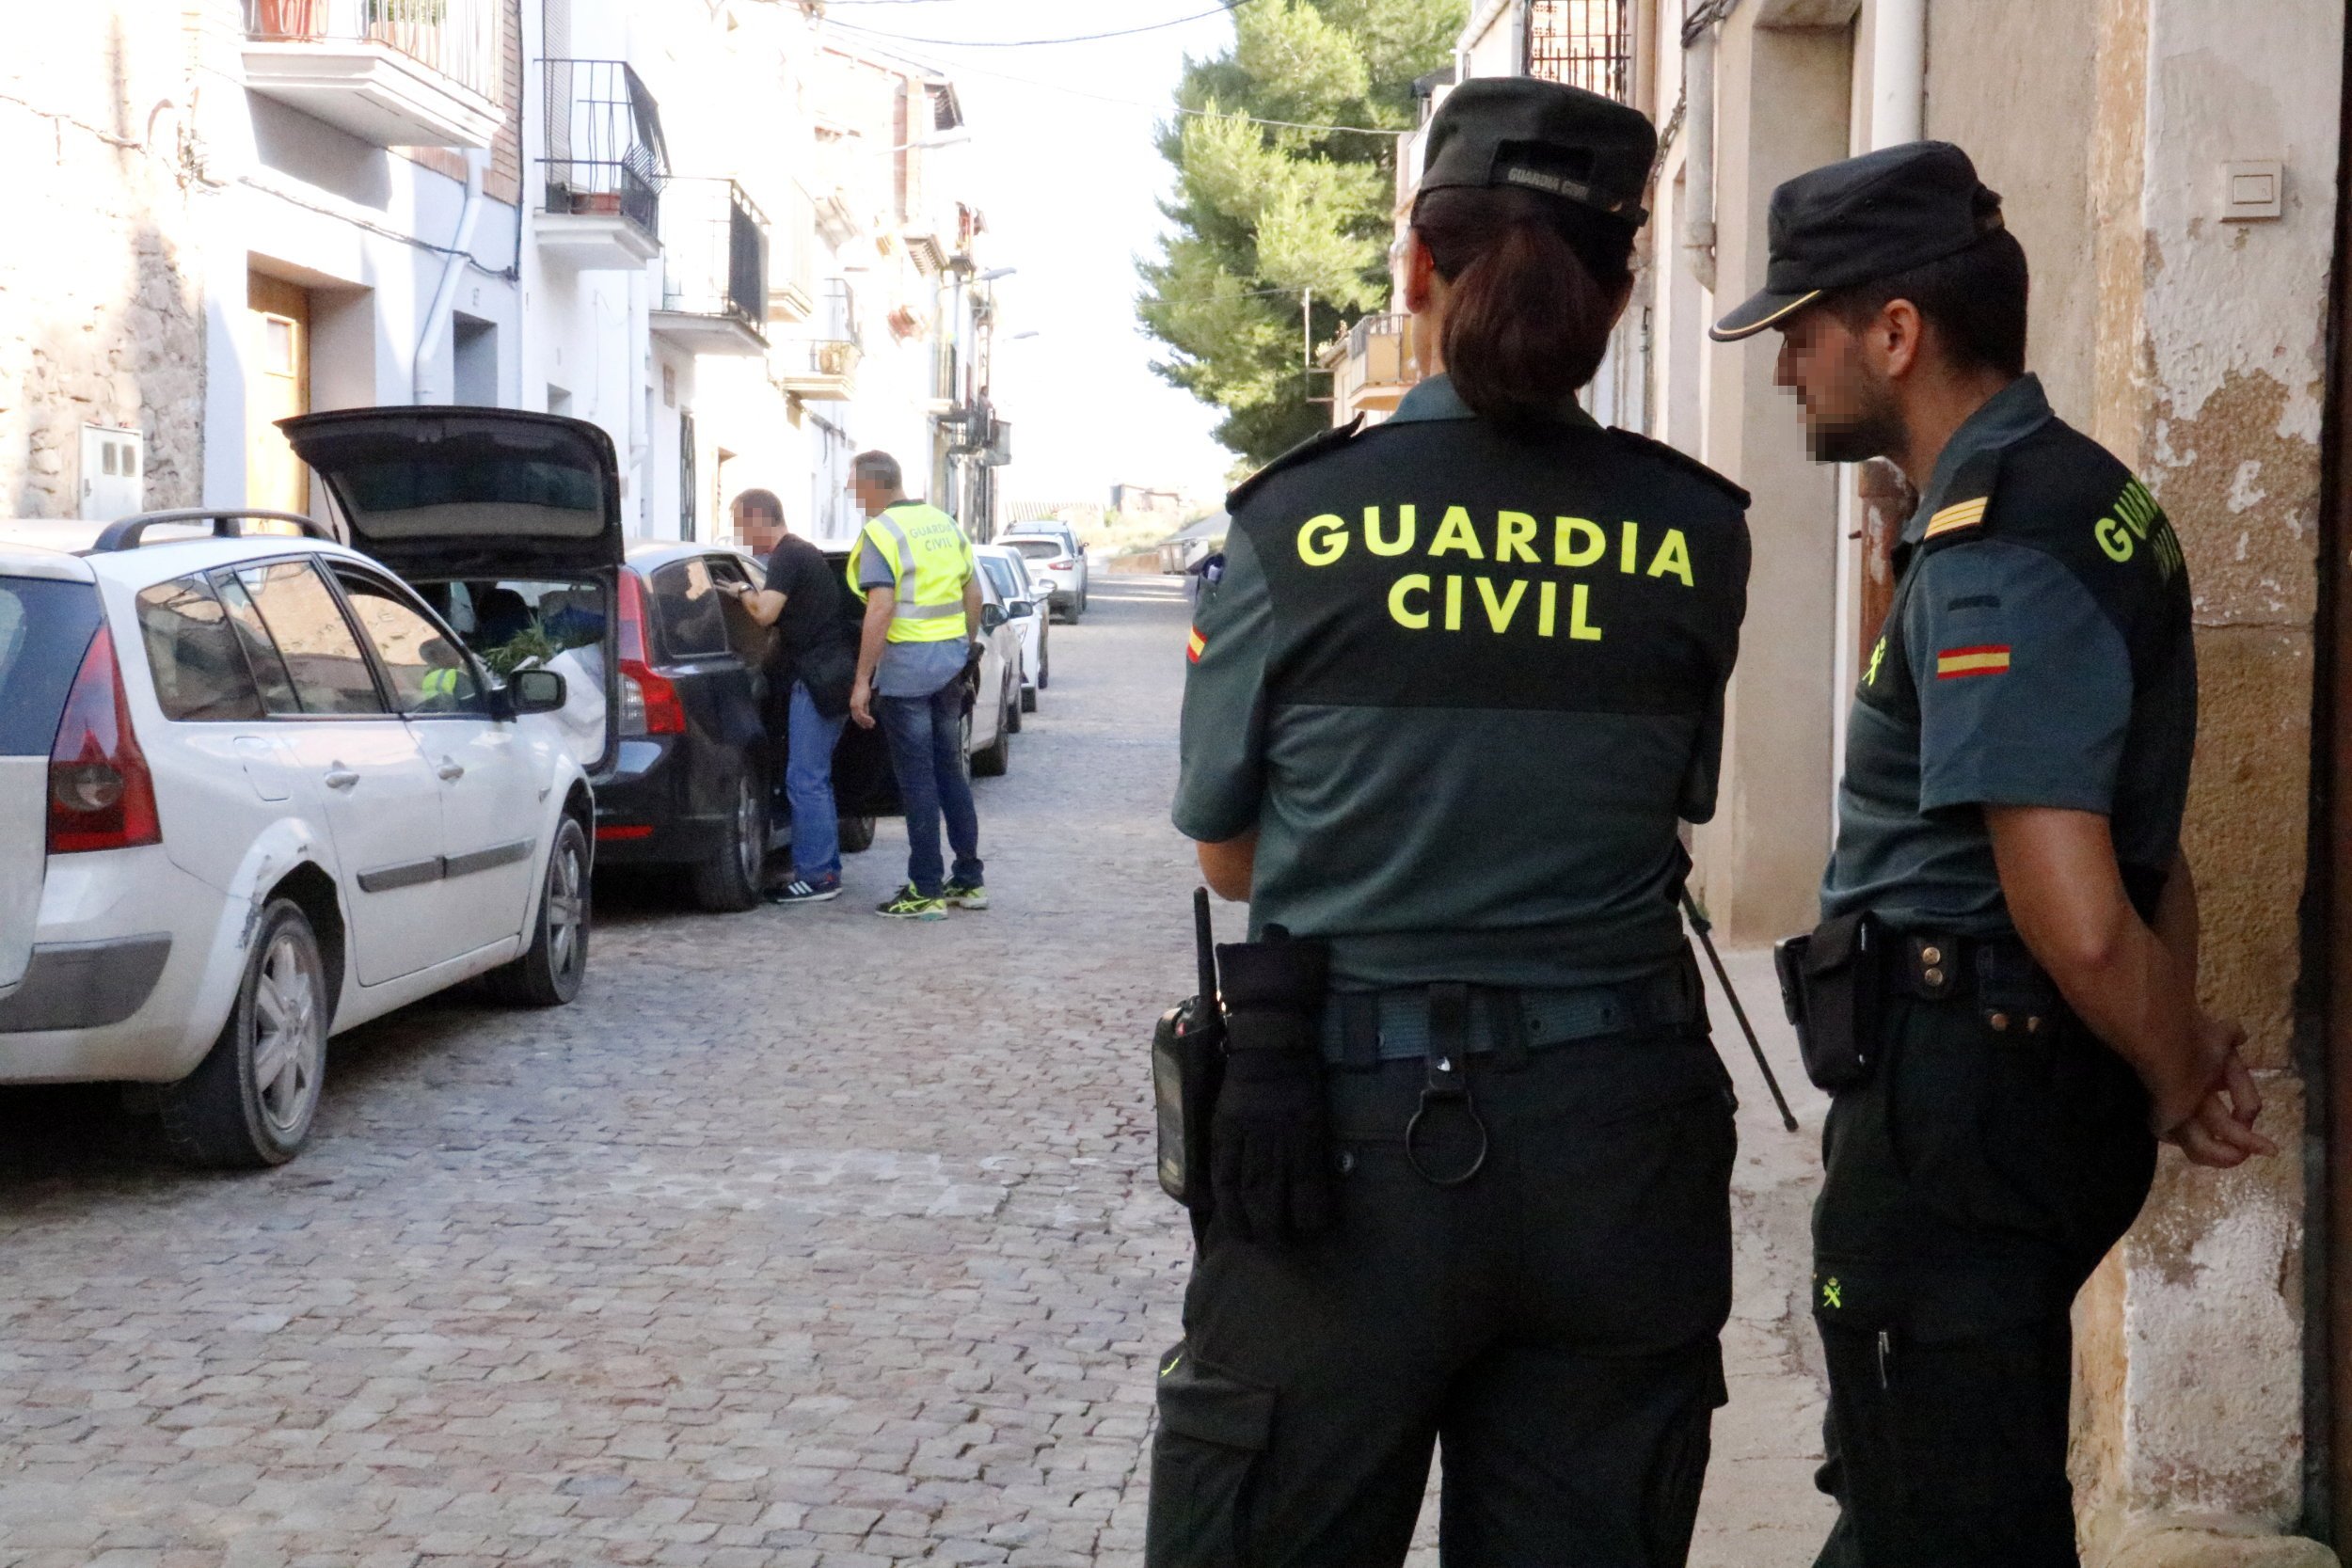 Una asociacion de guardias civiles saca pecho con El Prat porque se les quiere “echar de Catalunya”